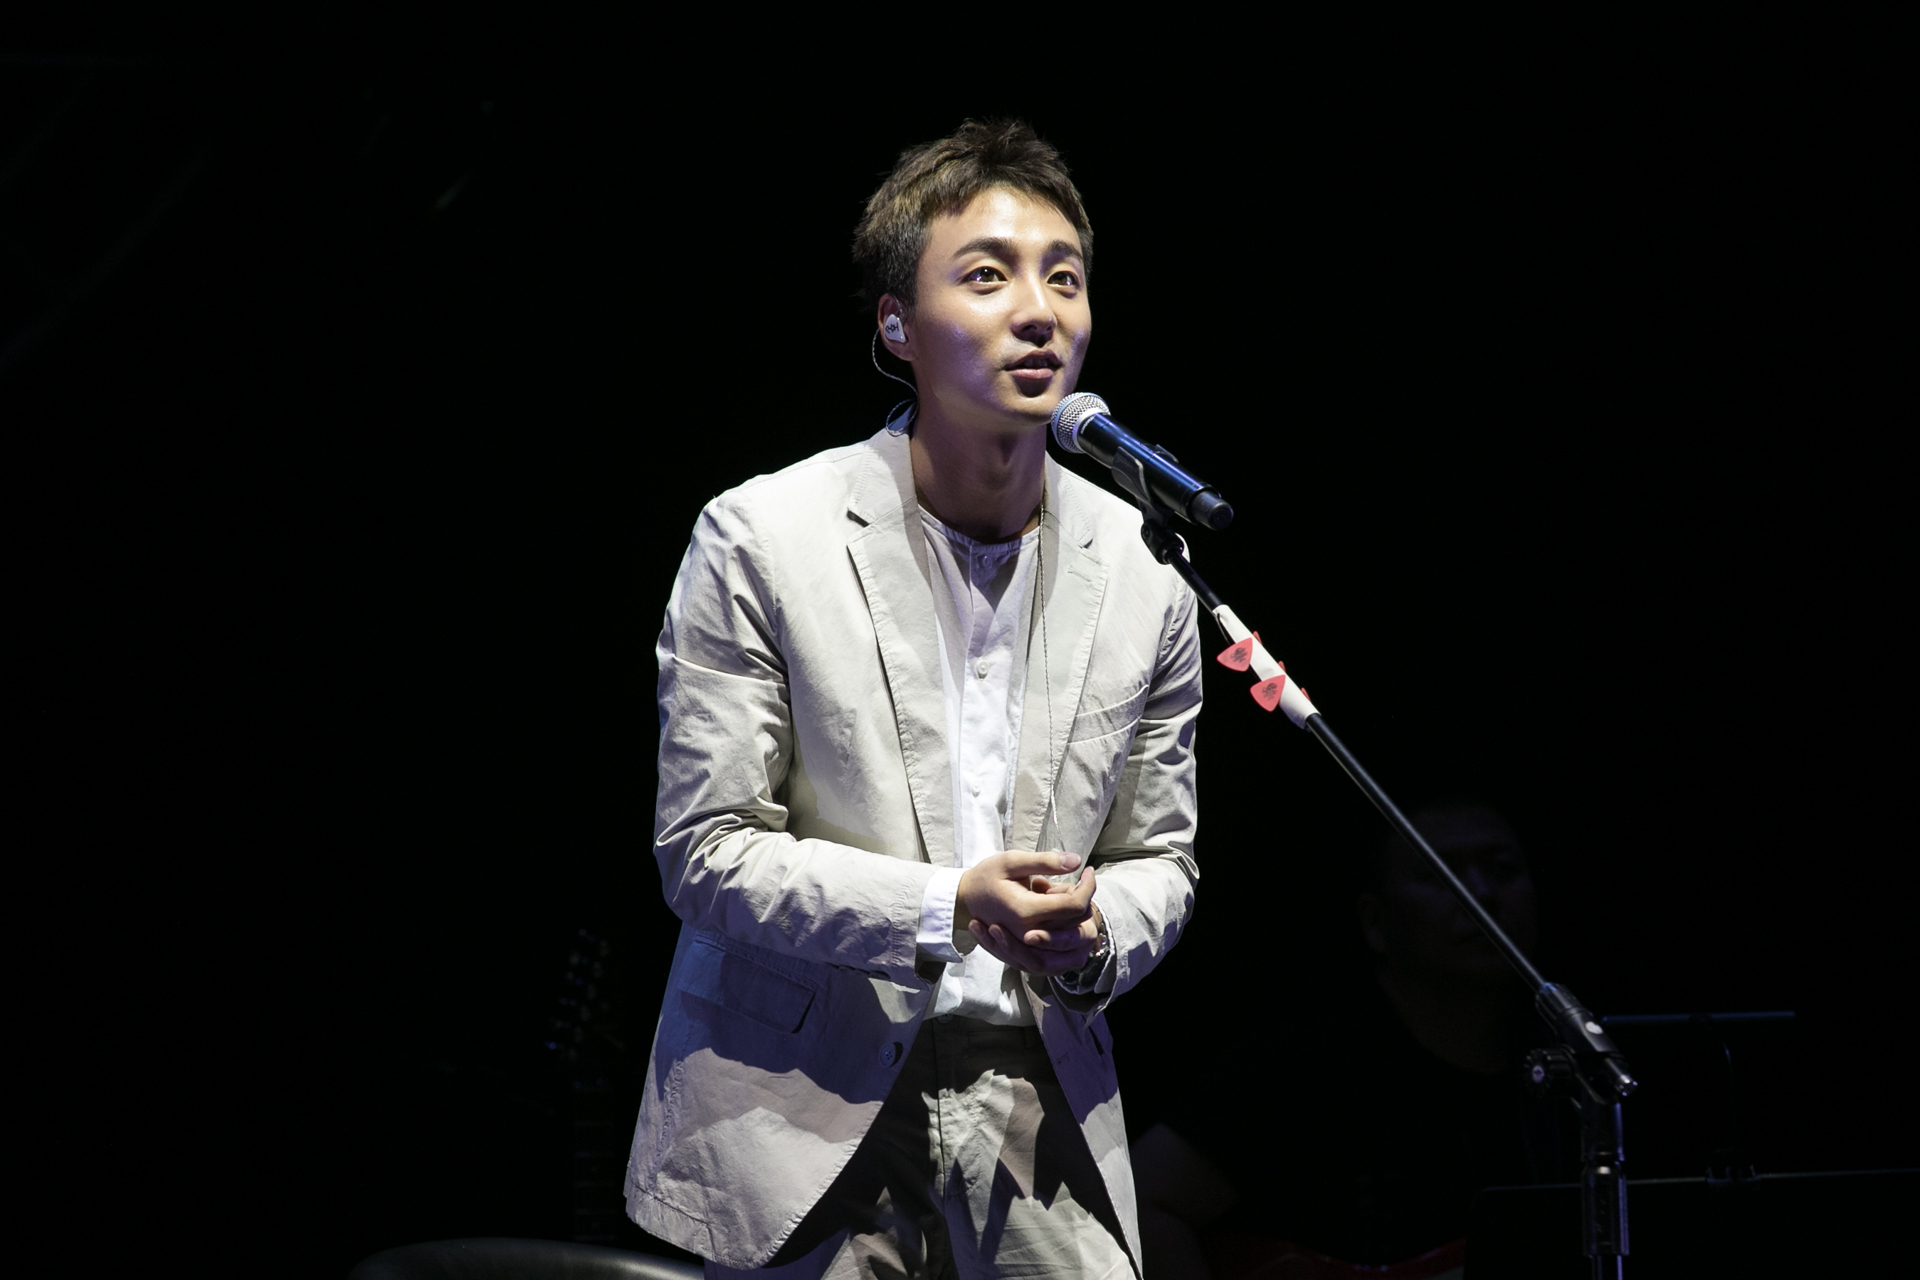 韓國唱作歌手超親民_Roy_Kim三度來台成台灣通_演唱會開放自拍大秀舞技4.jpeg